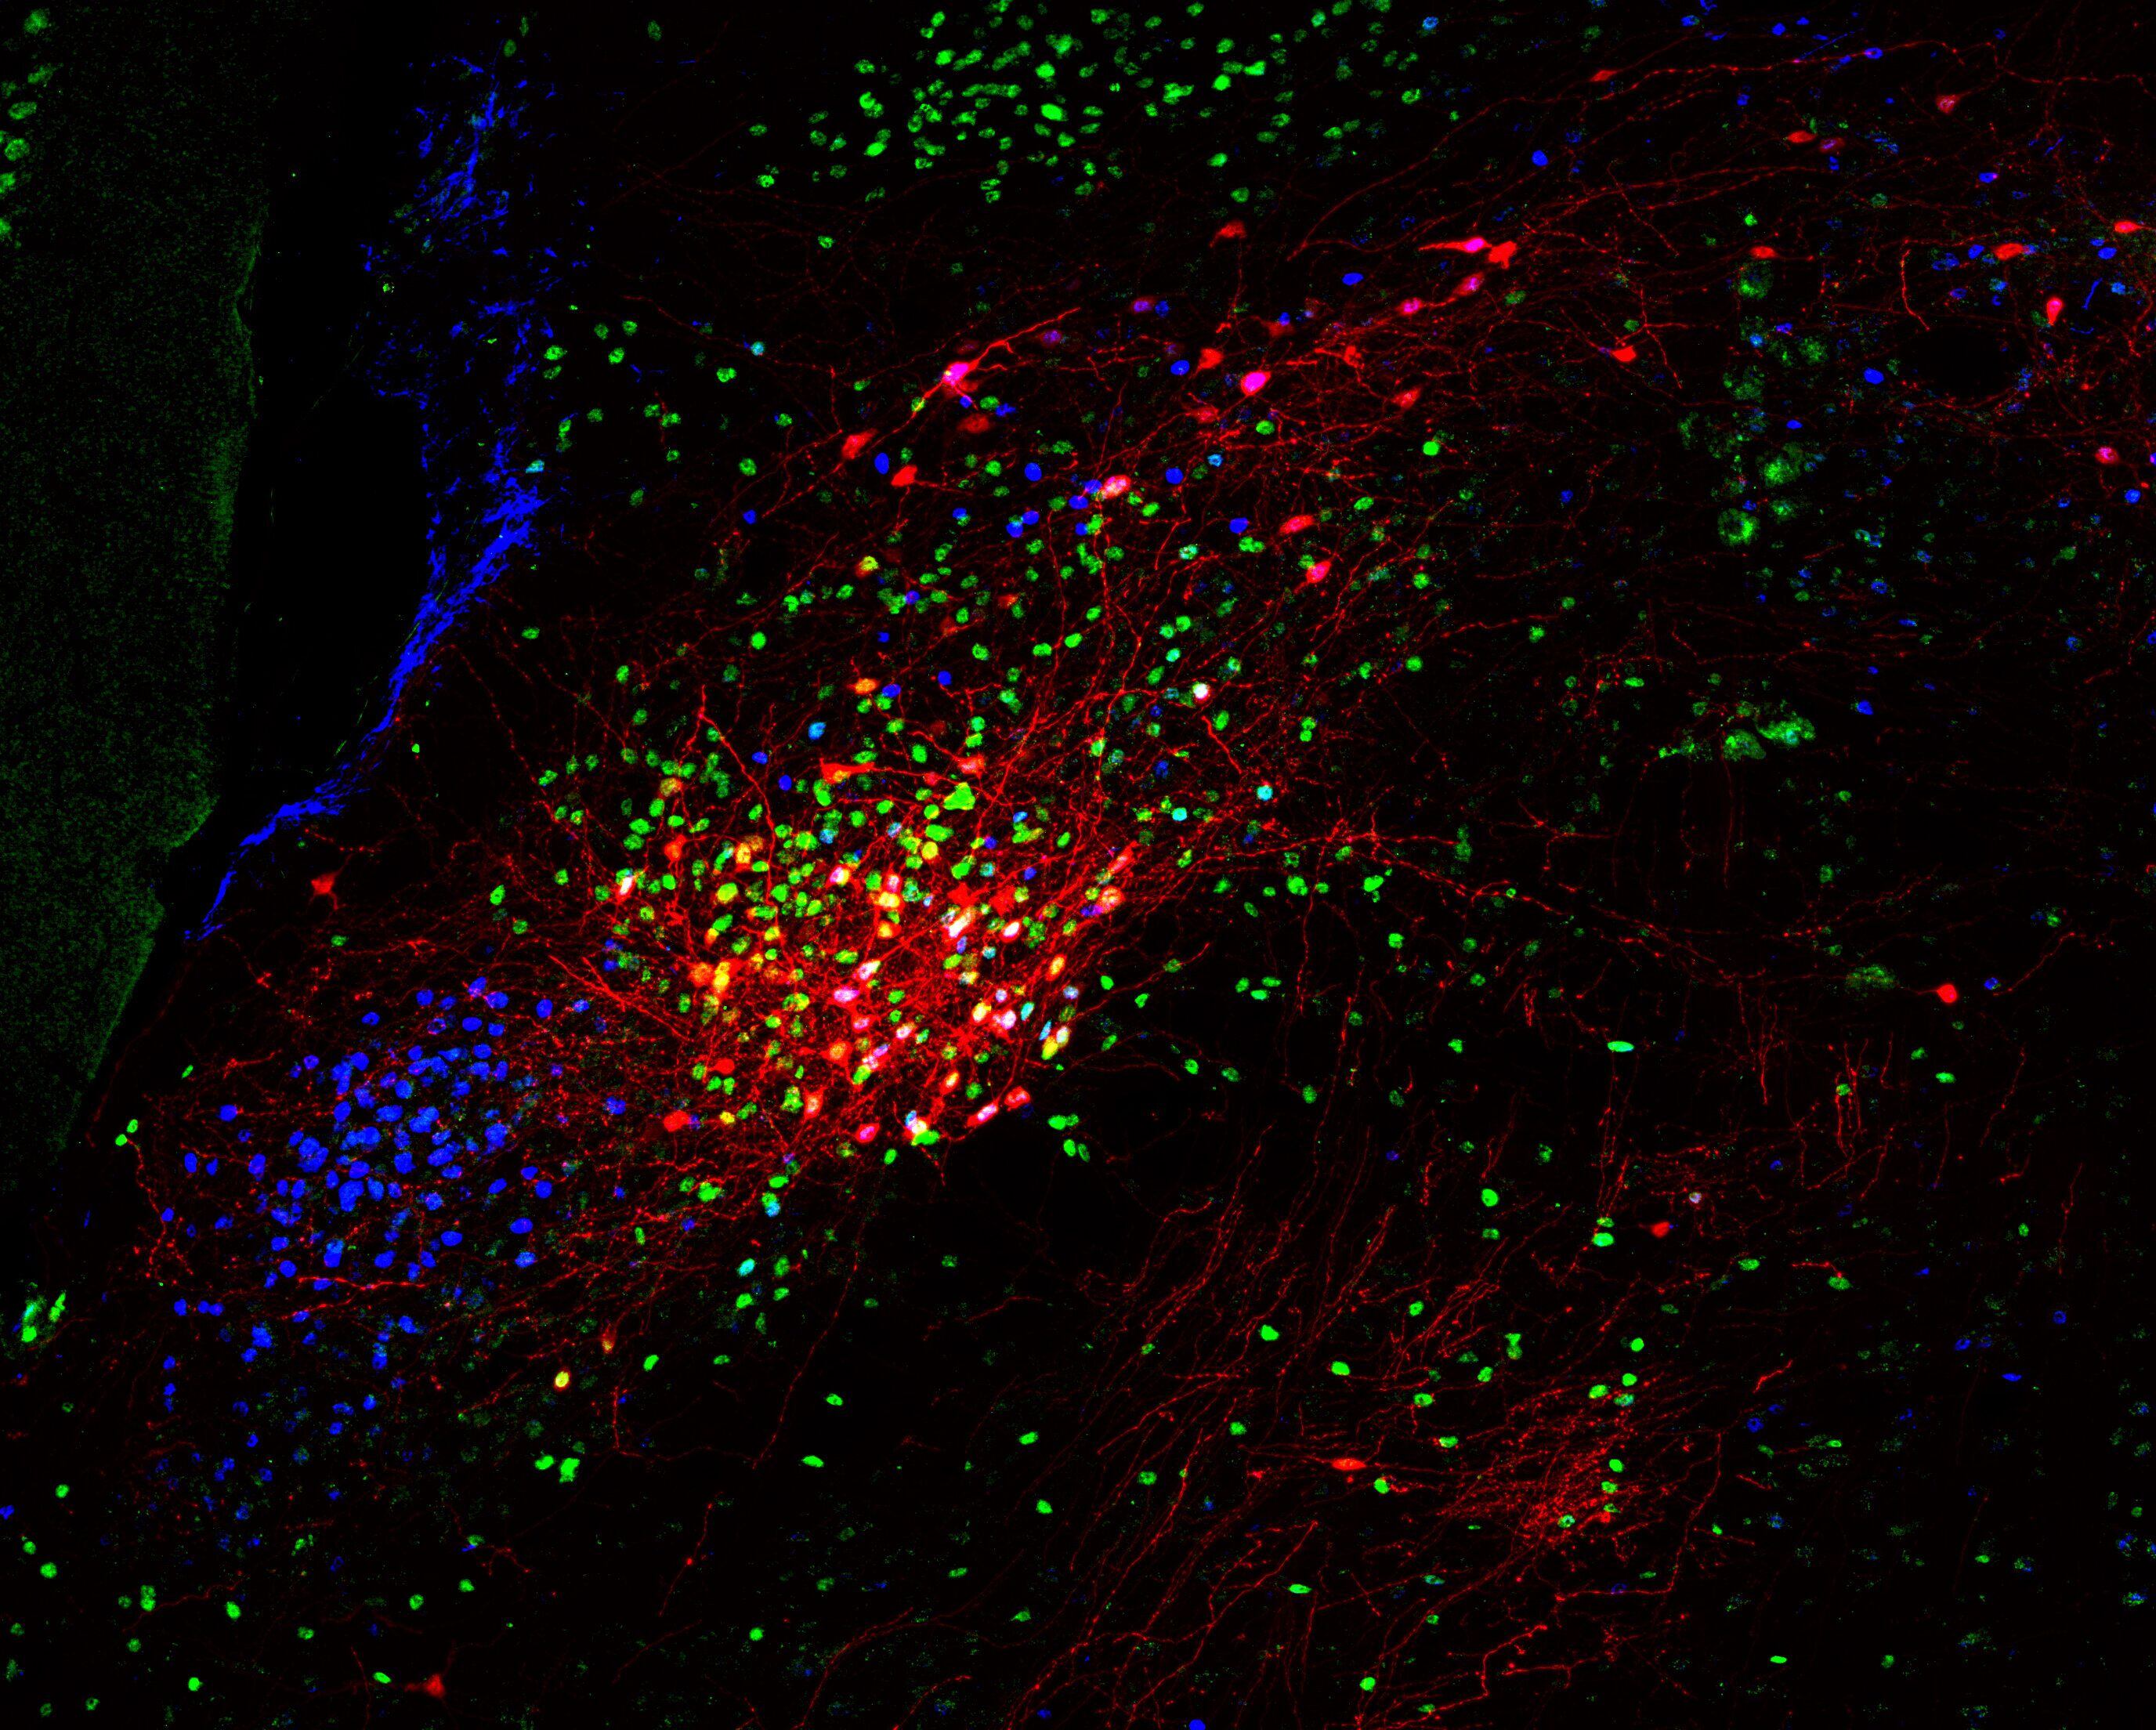 Las neuronas teñidas de rojo se proyectan por todo el cerebro para controlar la liberación de neurohormonas del estrés cuando se detecta una señal inflamatoria en la sangre. Las neuronas teñidas de verde son una subpoblación del núcleo parabraquial. El color azul muestra todos los núcleos de las células cerebrales (Instituto Pasteur / Ferdinand Jagot)